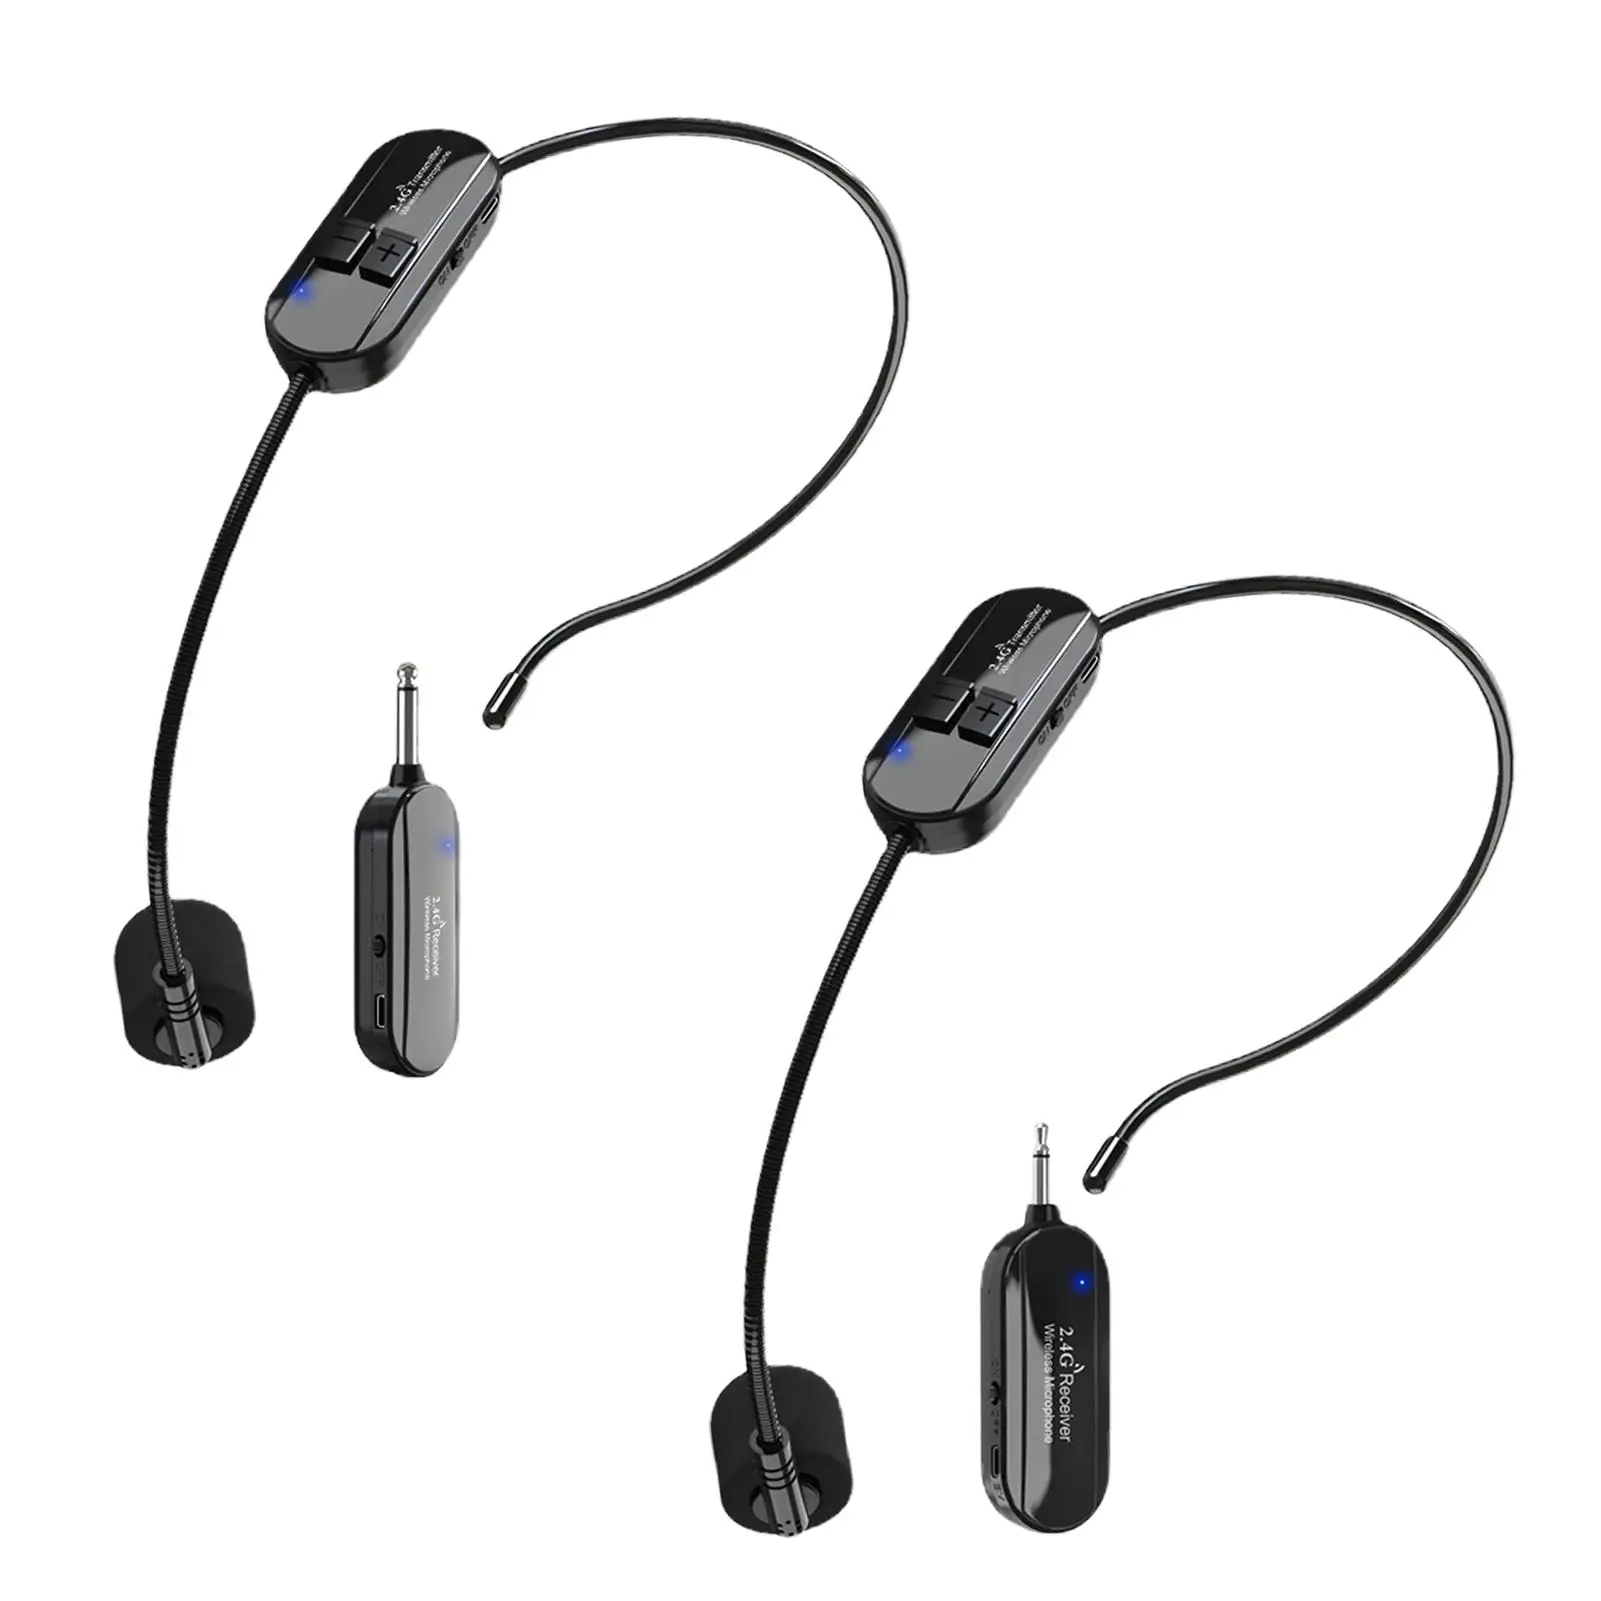 Bežične slušalice za nastavnike 2,4 G Dual bežični mikrofon TYPE-C za zvučnike Osobno cool mikrofon slušalice sa čistim zvukom